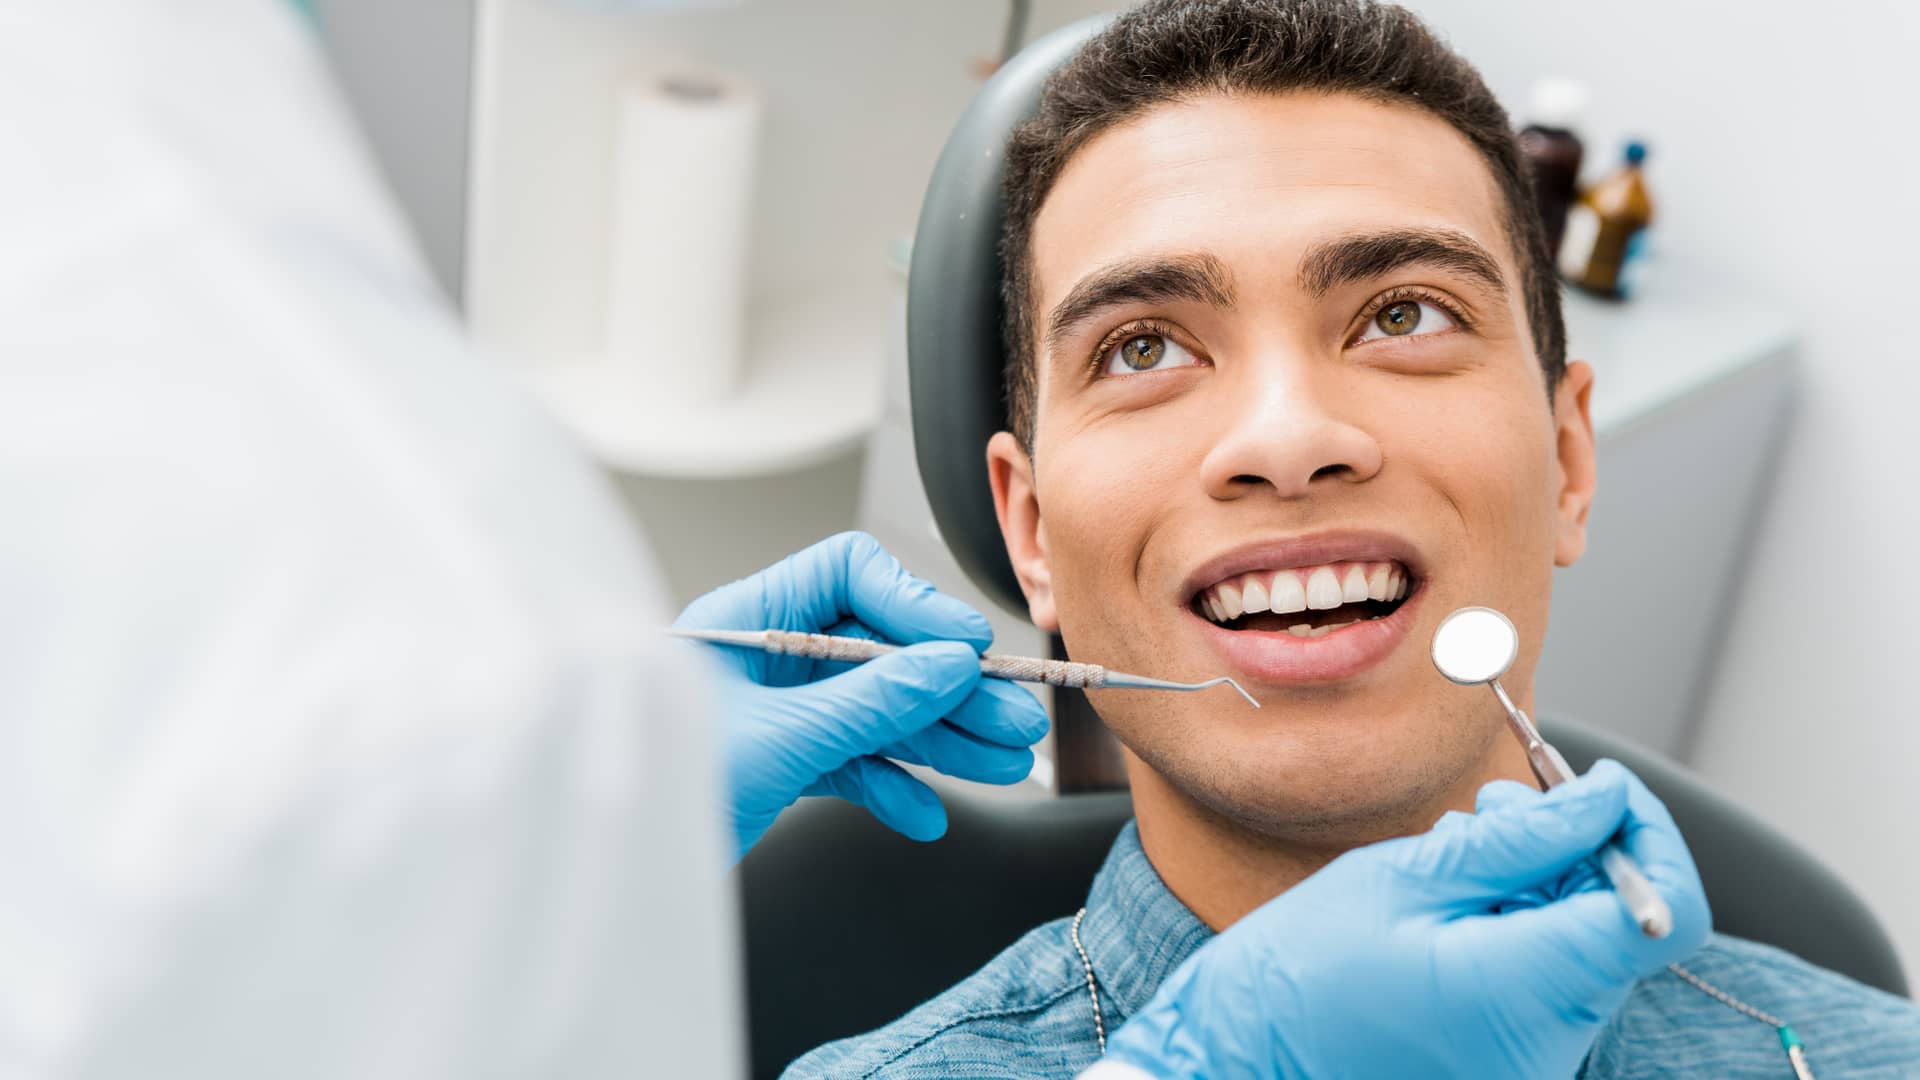 Rezumar Extremo Farmacología Adeslas Dental: clínicas, cómo pedir cita, teléfono y precios